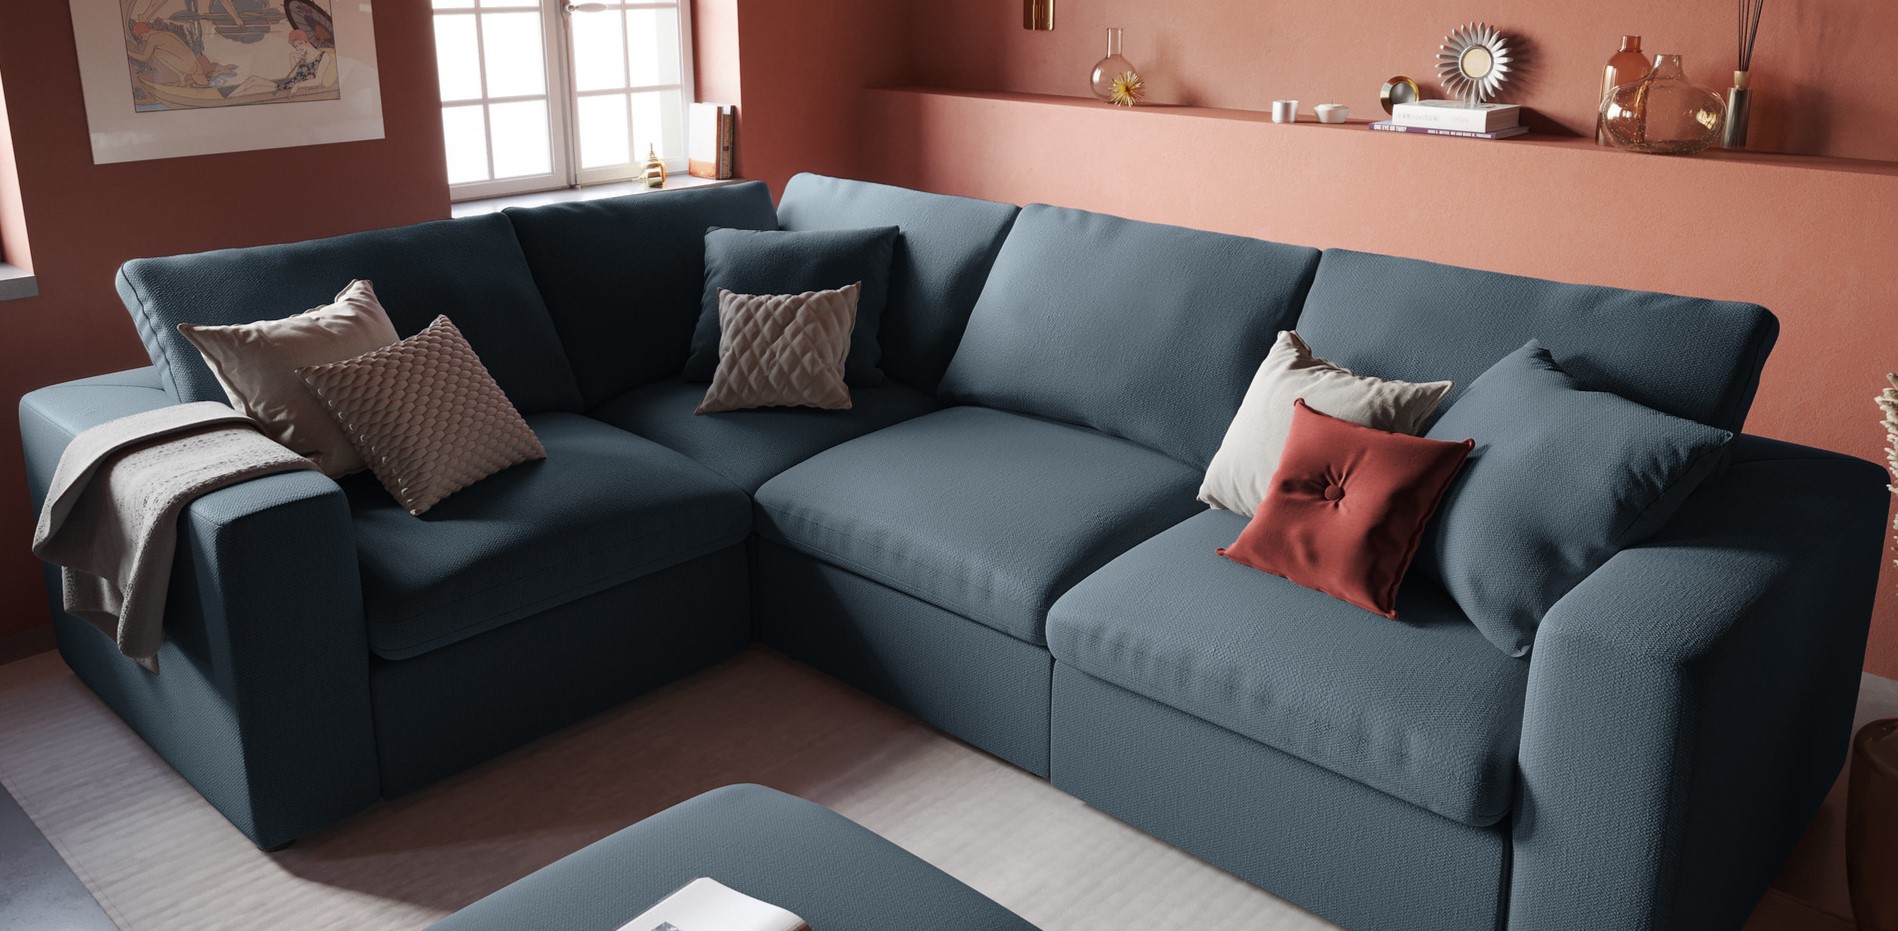 Для украшения дивана можно использовать подушки разных цветов и размеров